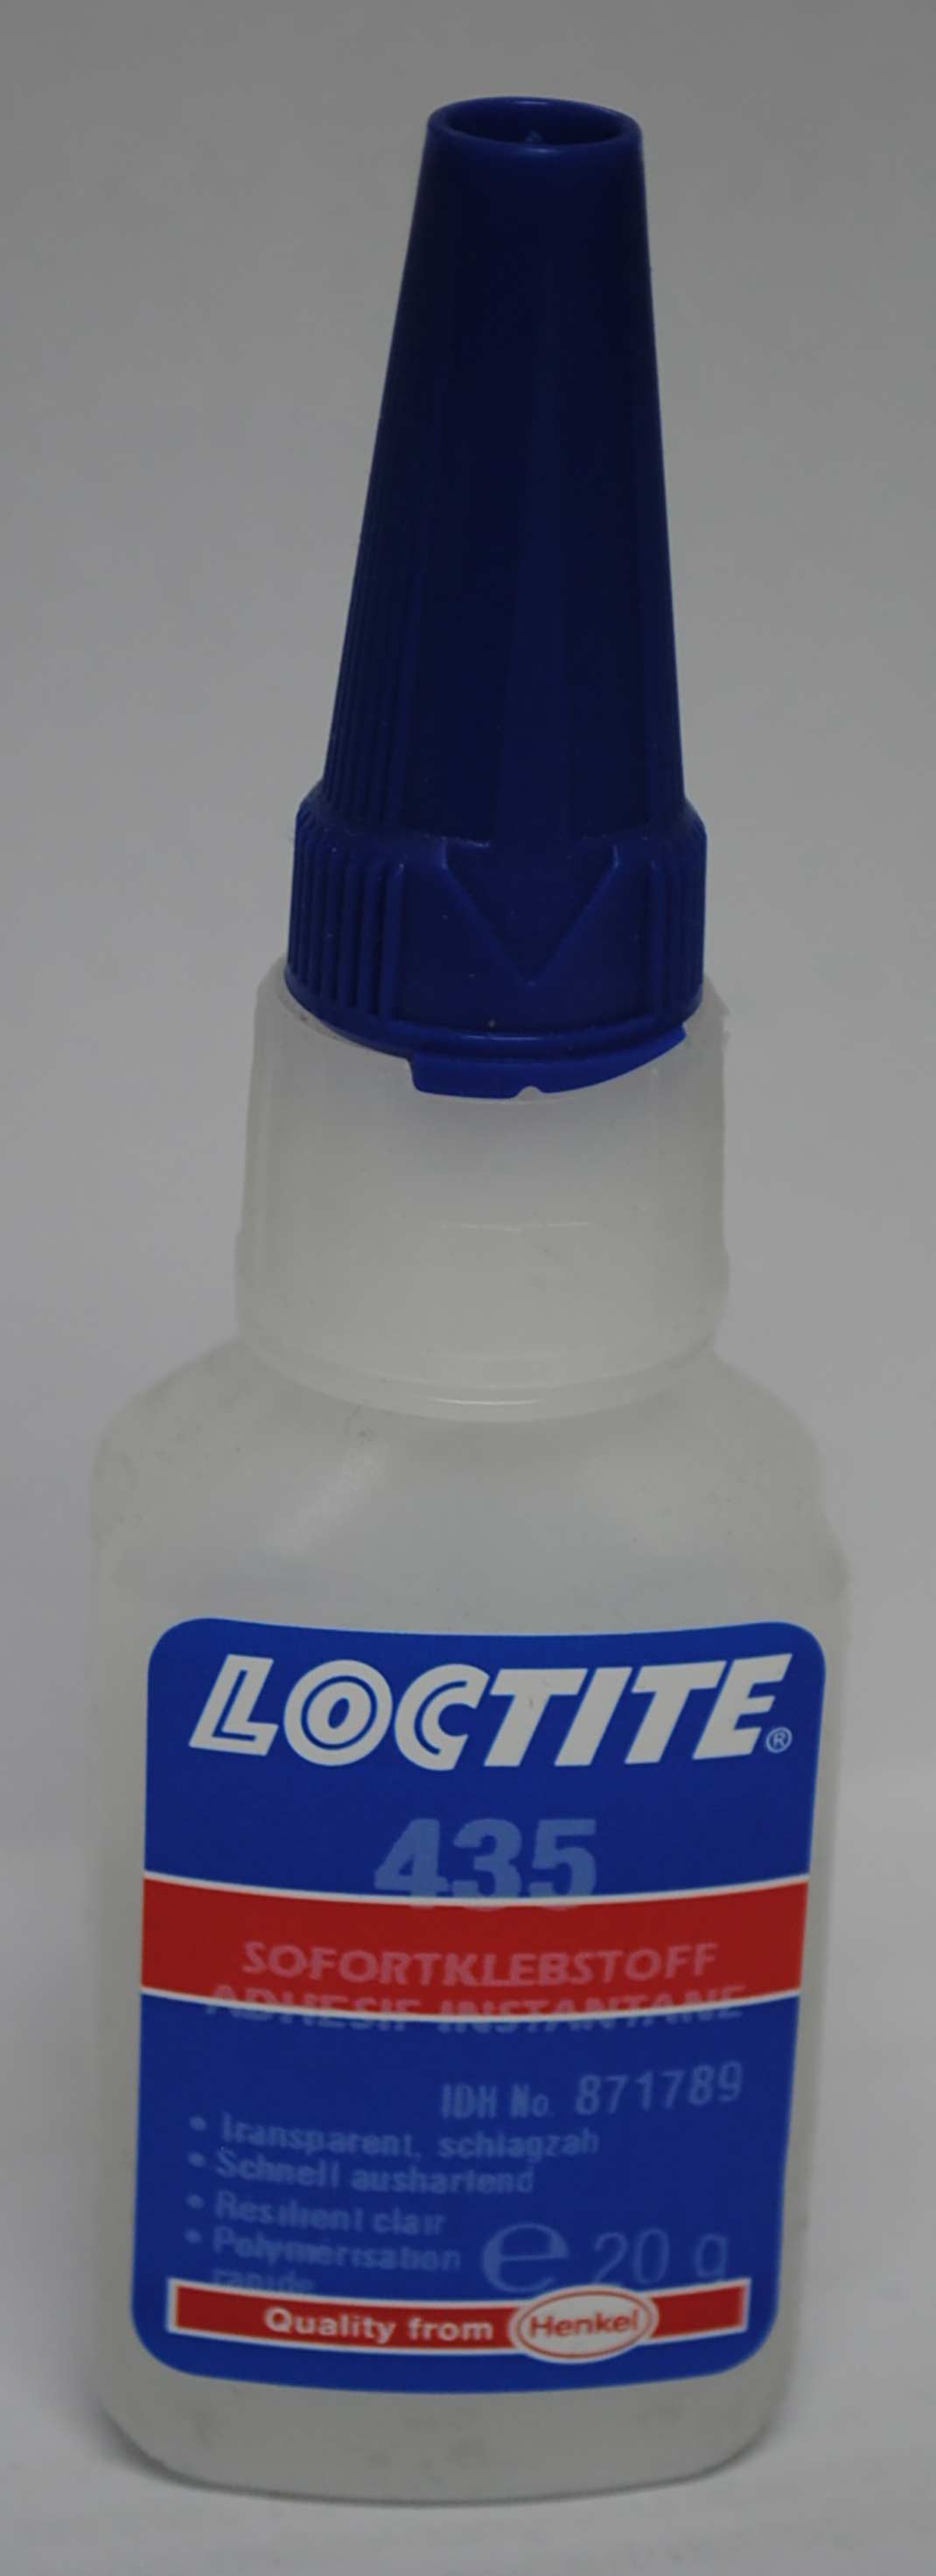 Loctite 435 (Beständig gegen Schlagbelastungen, transparent)